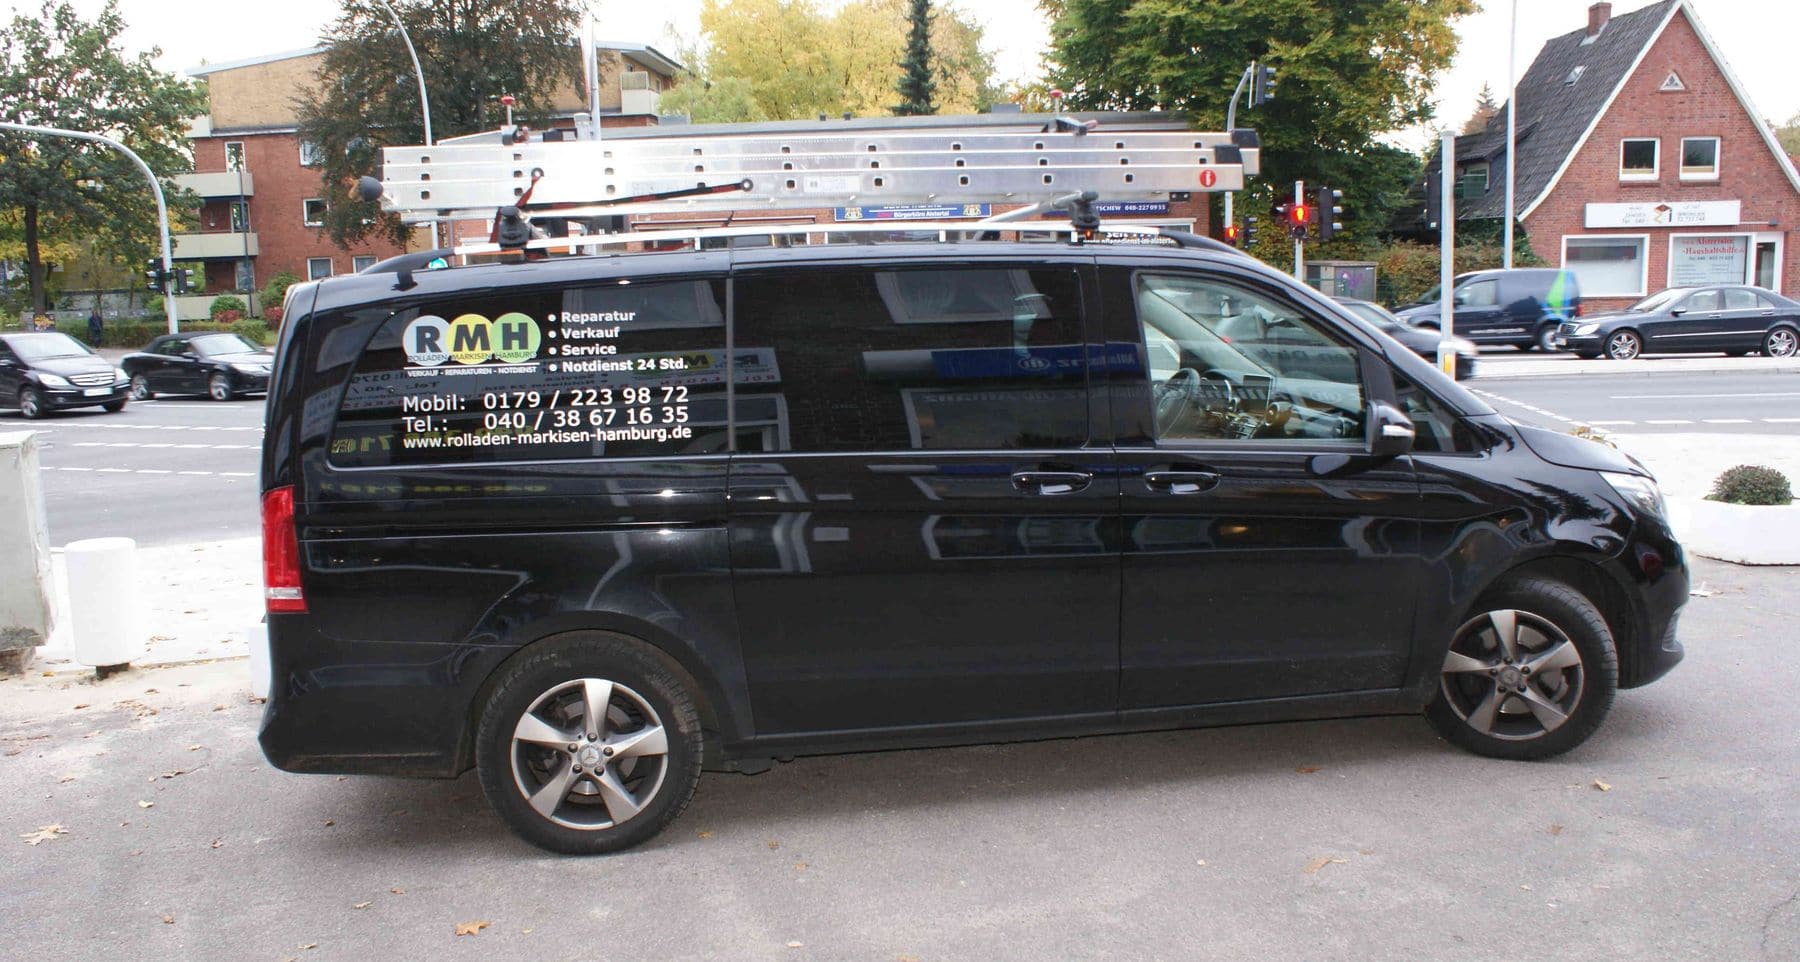 Ein schwarzer Lieferwagen mit Firmenlogos und einer auf dem Dach montierten Leiter, geparkt am Straßenrand.